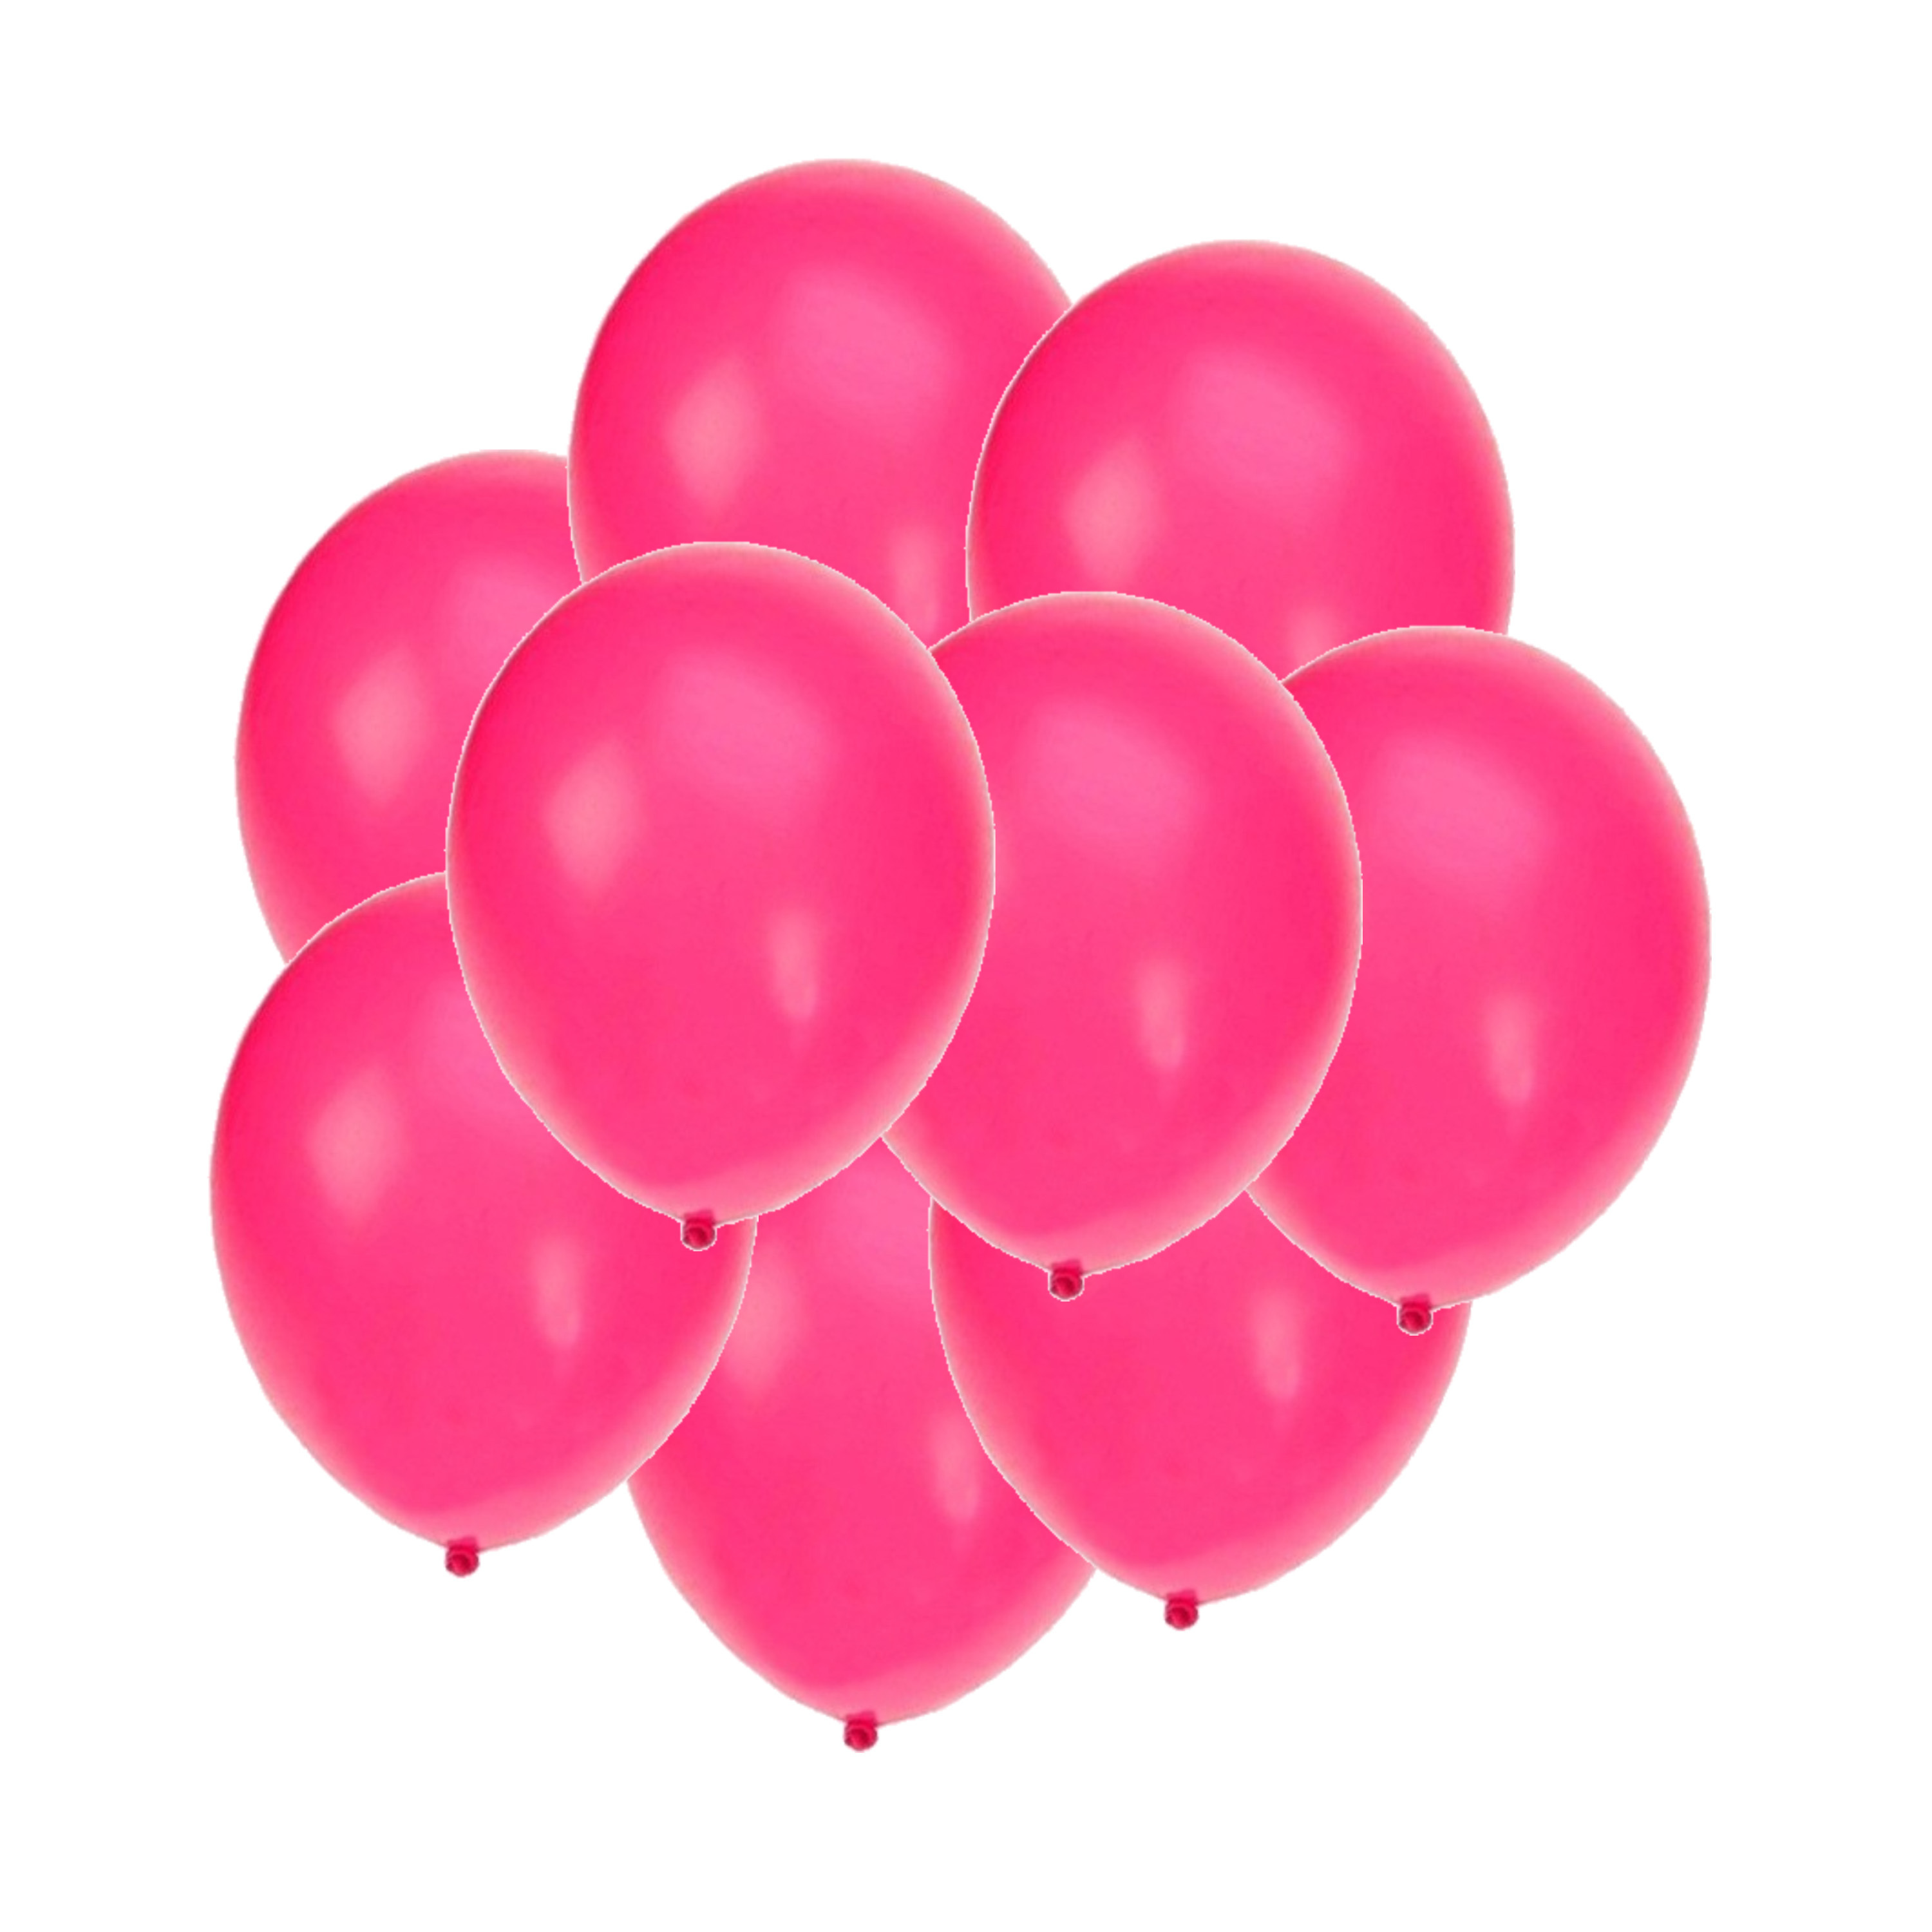 Bellatio decorations - Ballonnen knalroze/felroze 25x stuks rond 27 cm - Top Merken Winkel